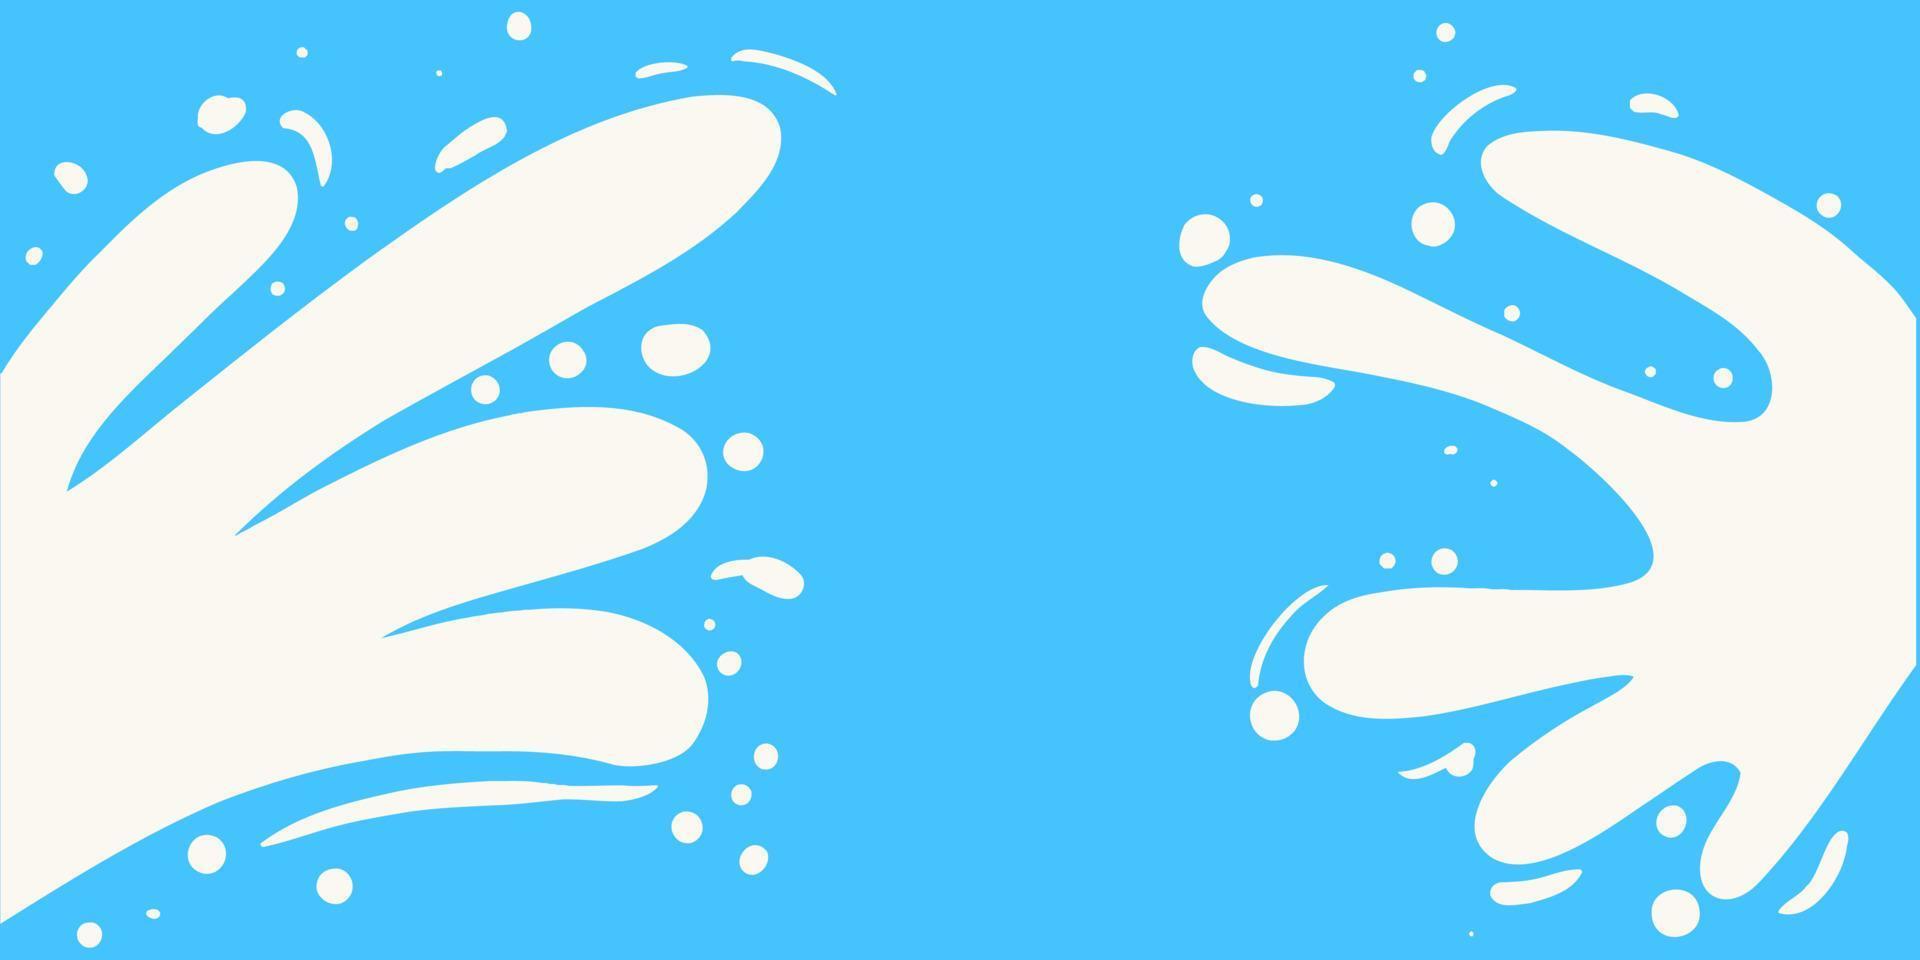 respingo de leite fresco sobre fundo azul. produto lácteo branco fluindo de ambos os lados. ilustração vetorial plana para banner, pôster, vetor